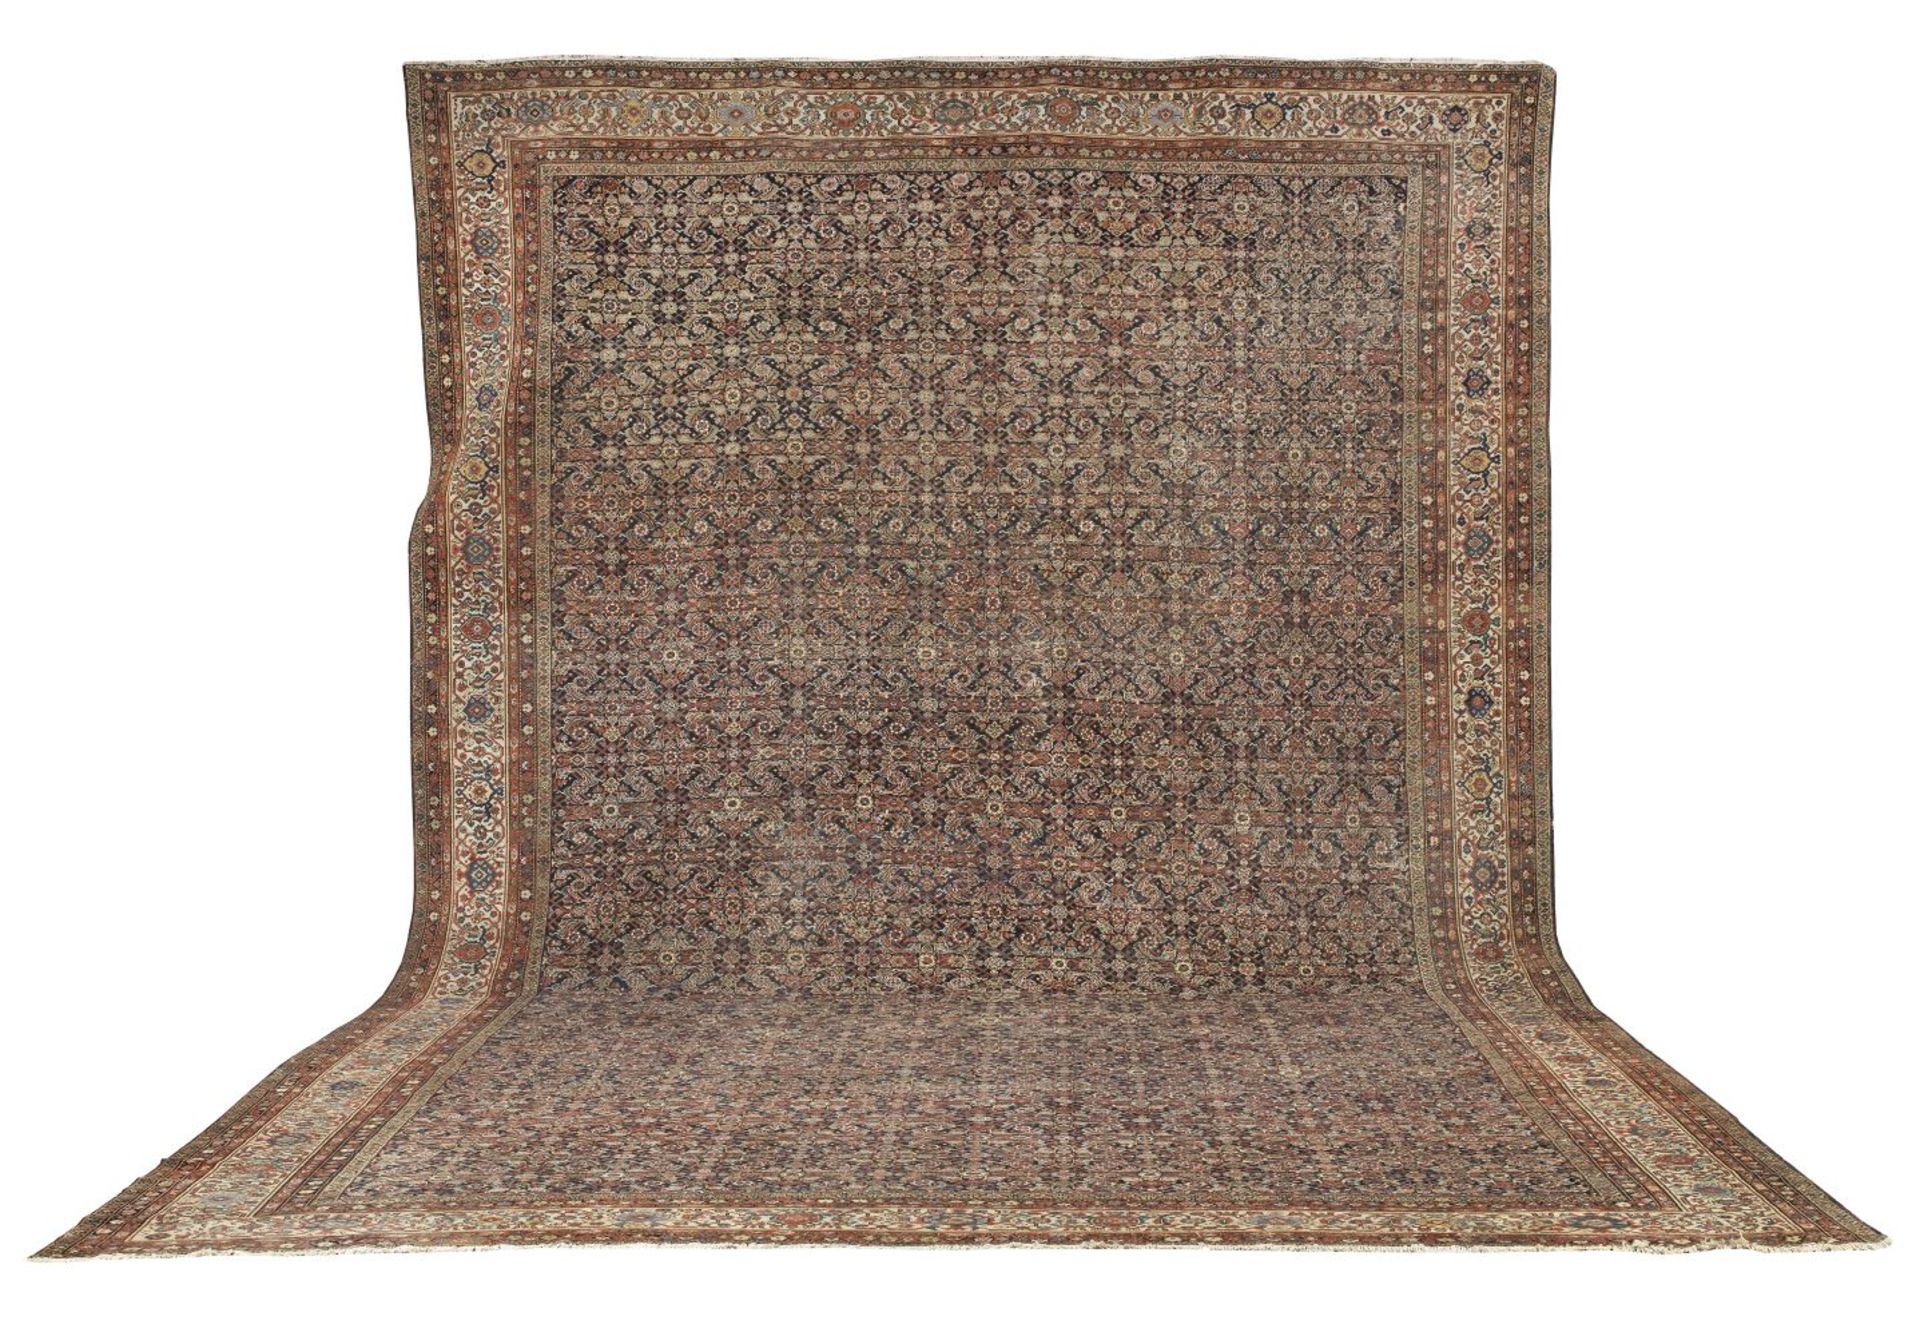 A large Fereghan carpet Central Persia, c.1890 733cm x 492.5cm